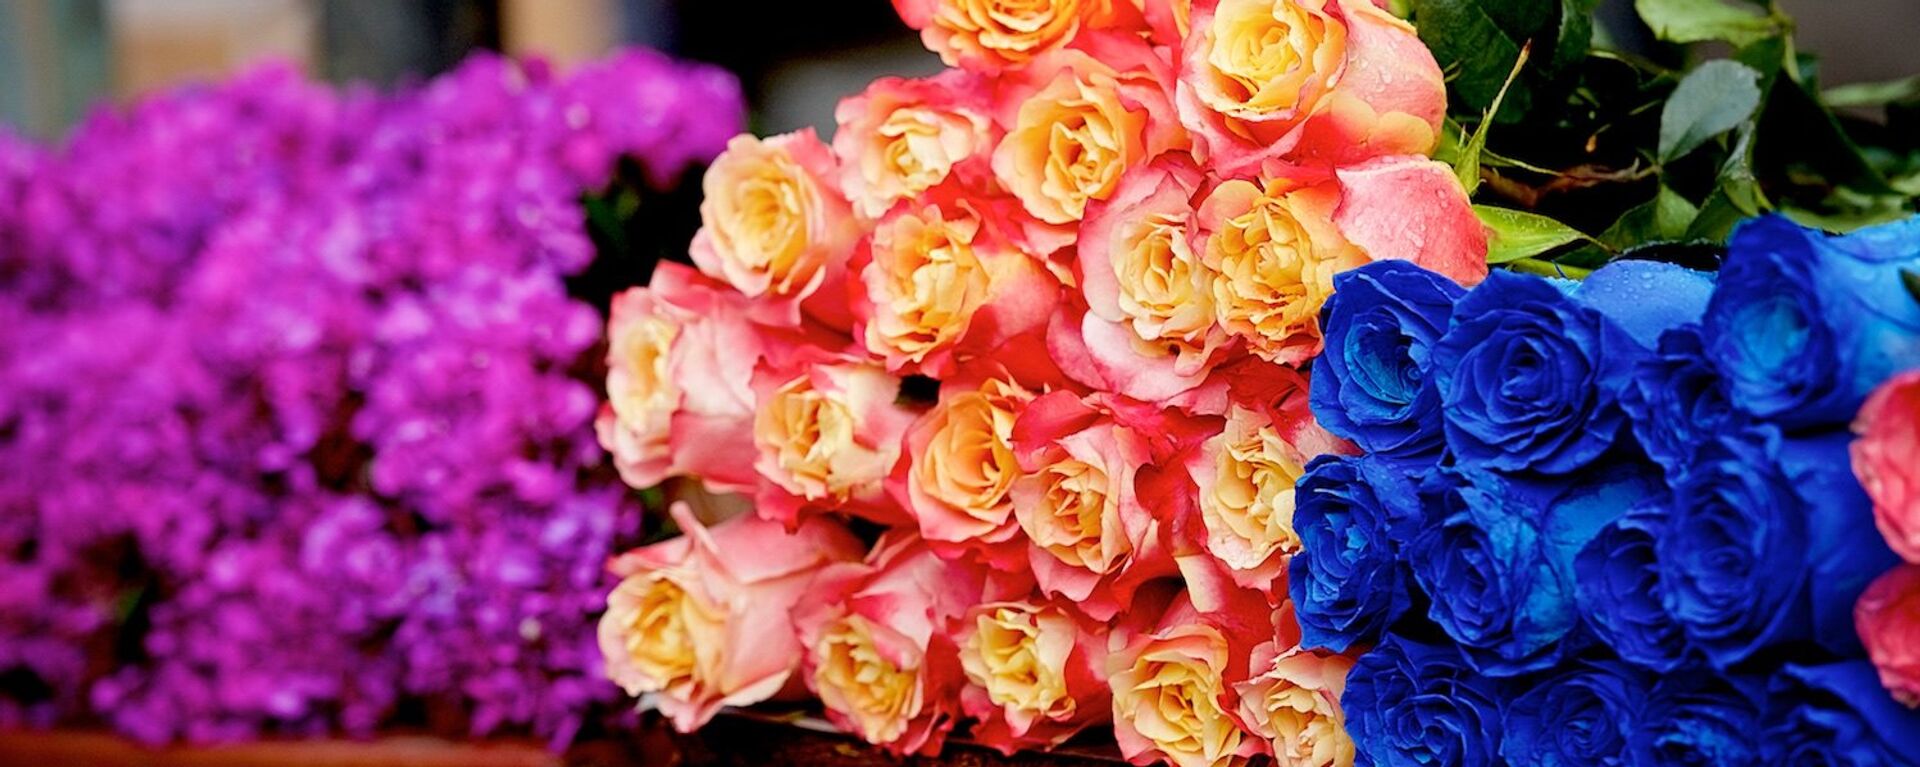 Розы всевозможных расцветок на цветочном базаре - Sputnik Грузия, 1920, 06.03.2017